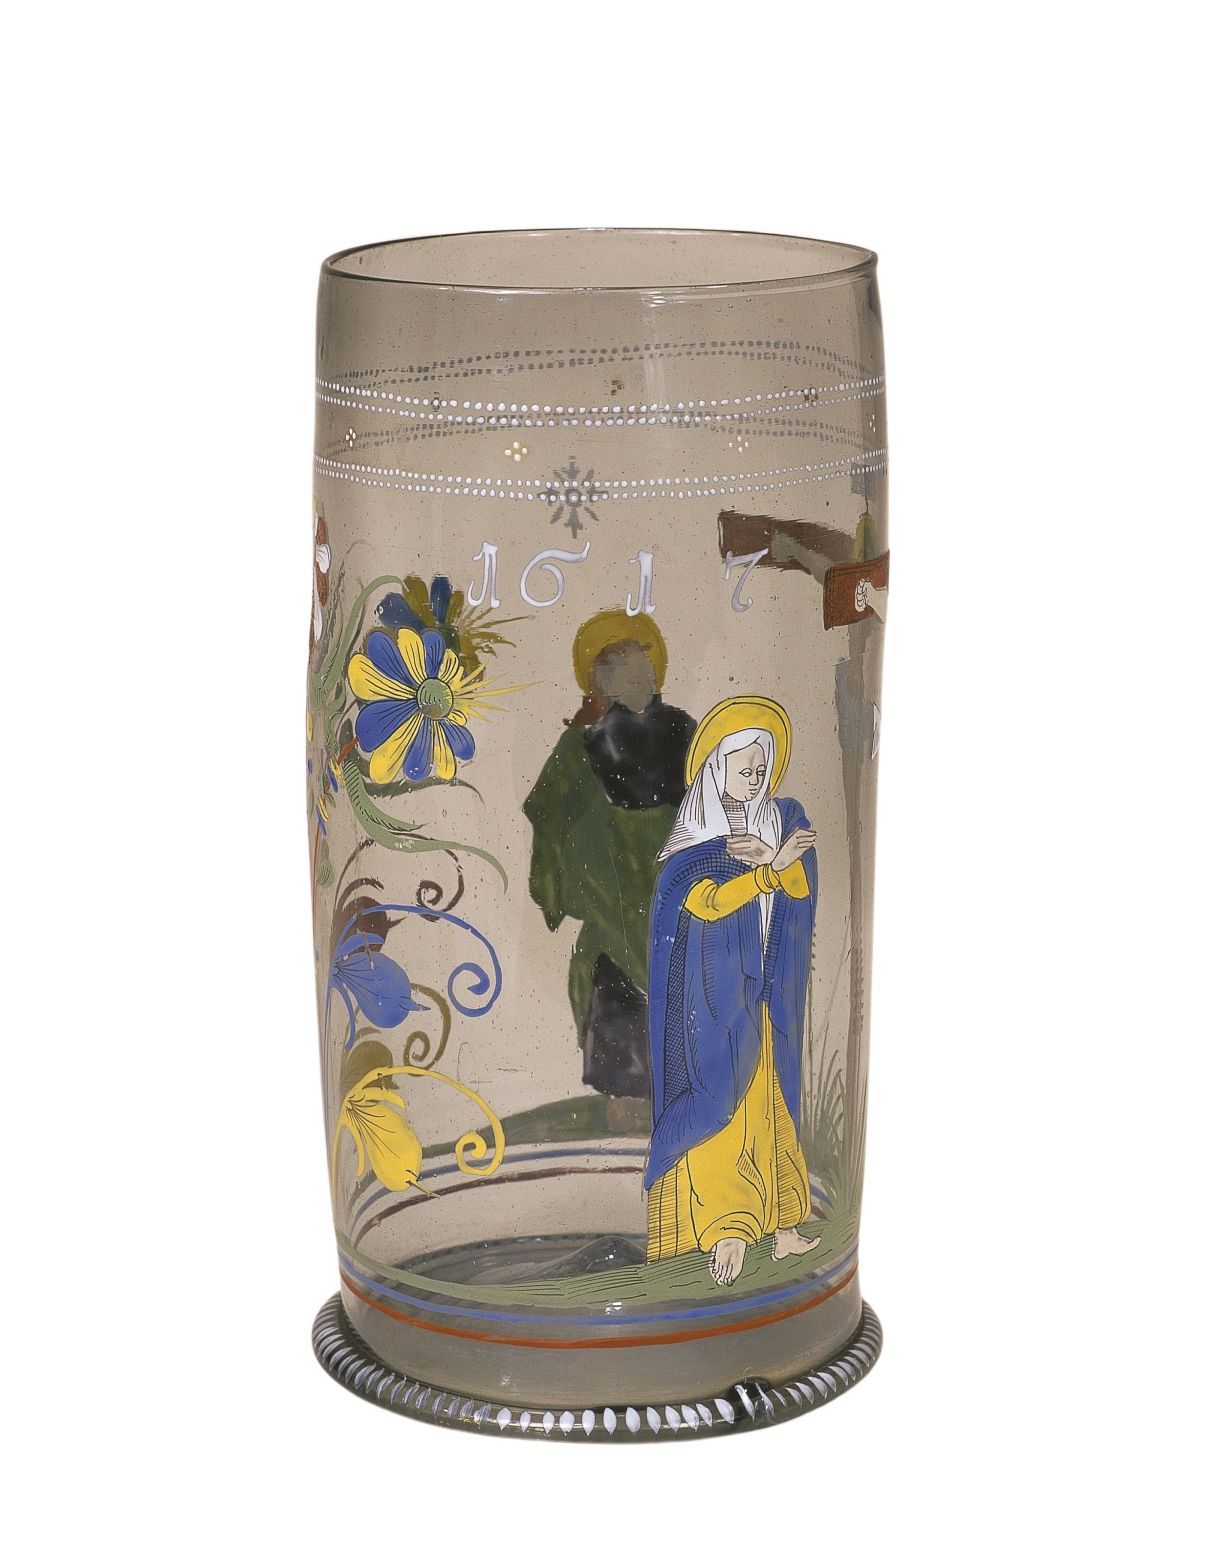 Boehmischer-Glashumpen-1617-datiert-maria